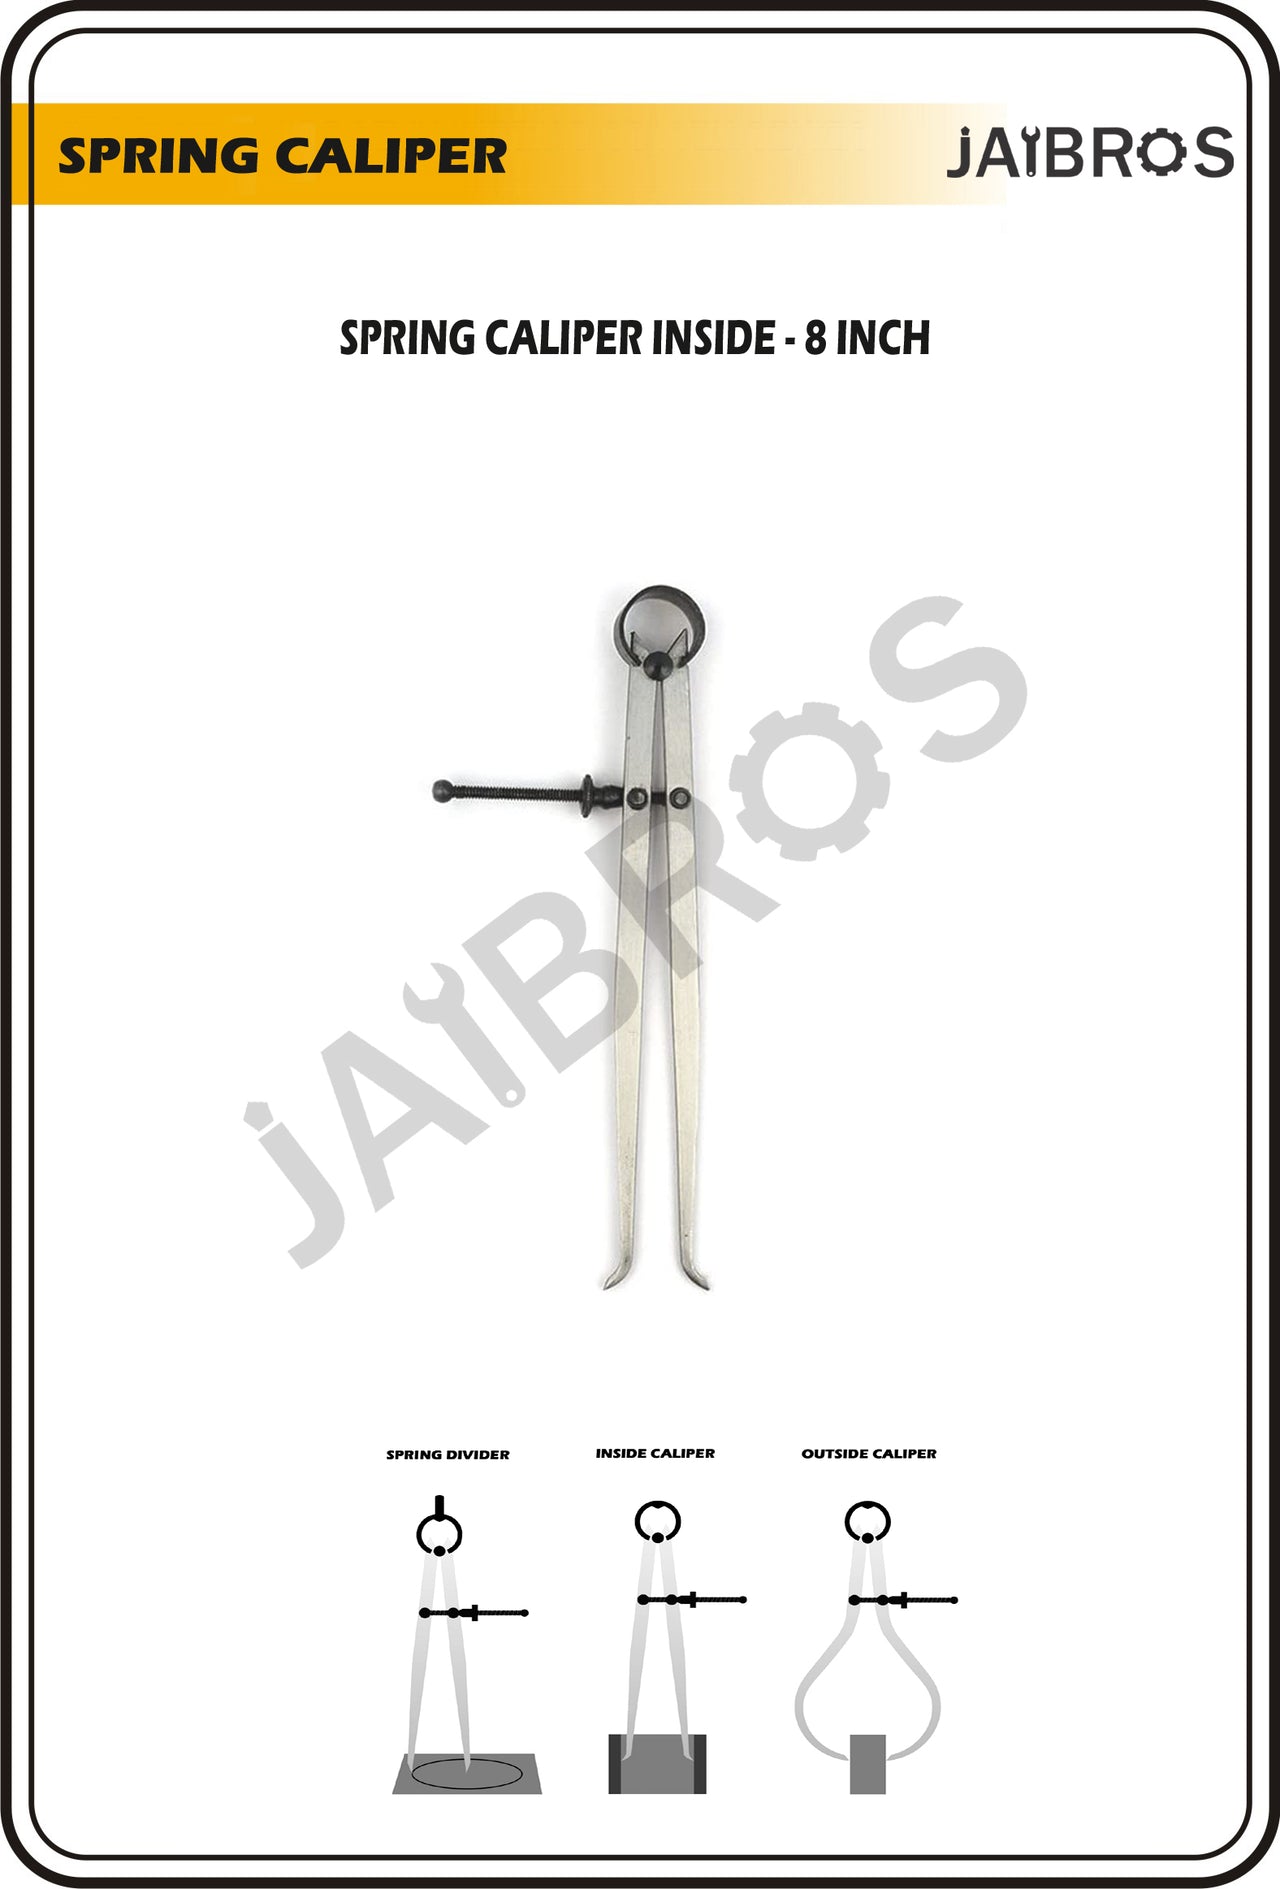 Spring Caliper Flat 8 inch /200 MM